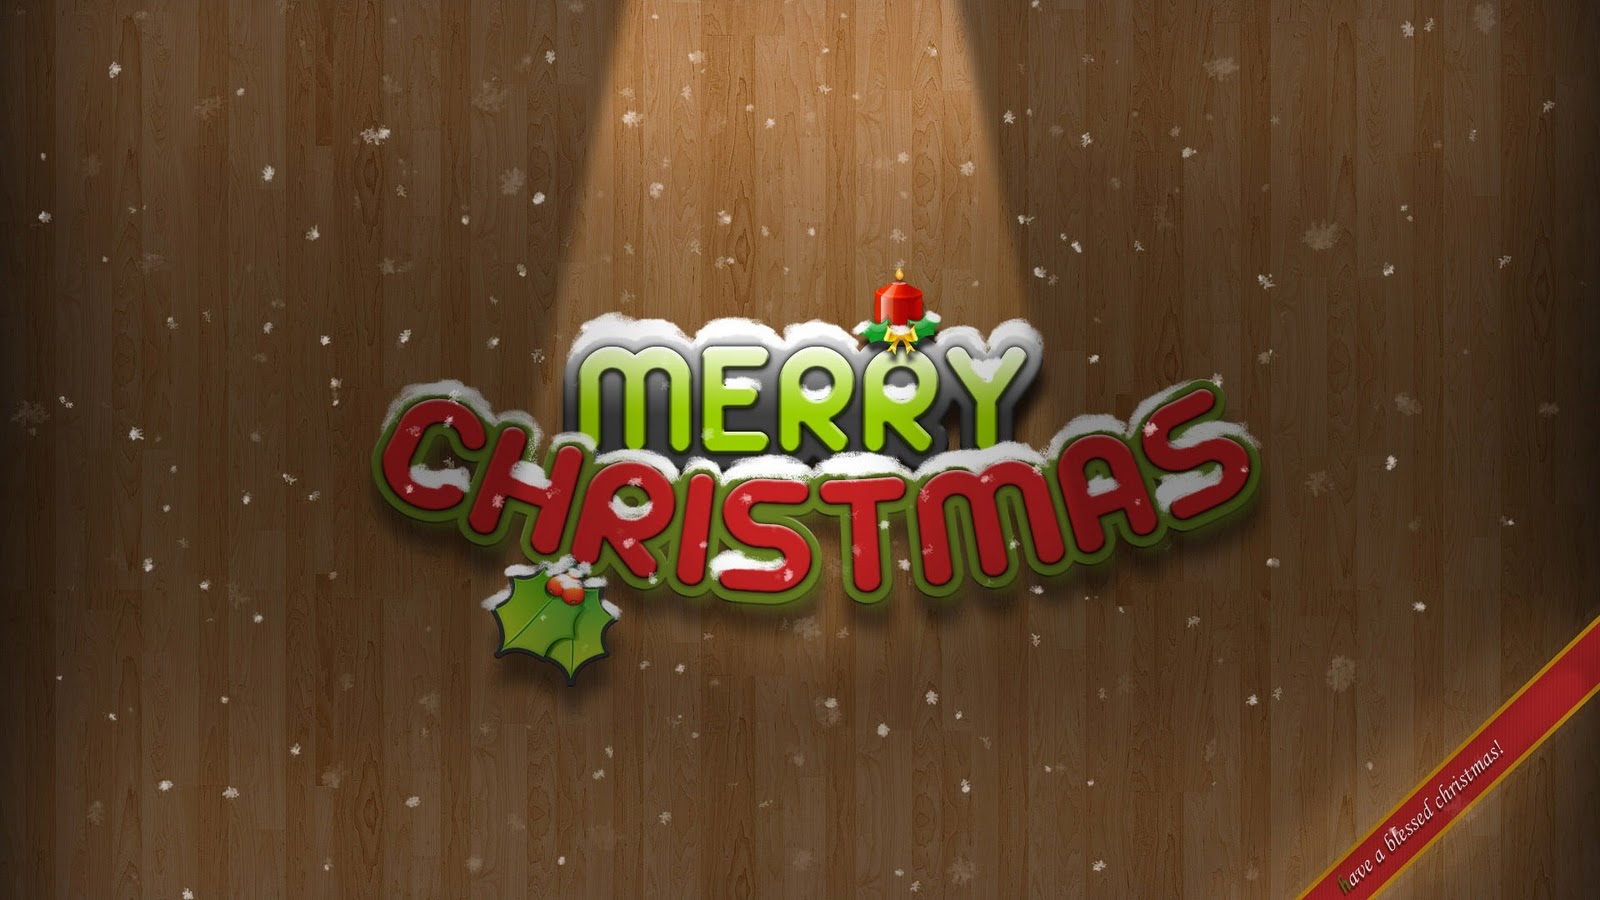 http://2.bp.blogspot.com/-OW8bA54sfVQ/TsTDAzPJ1SI/AAAAAAAADz8/v43xepbzRCc/s1600/Christmas-desktop-Wallpapers-HD-psupero-images-1.jpg